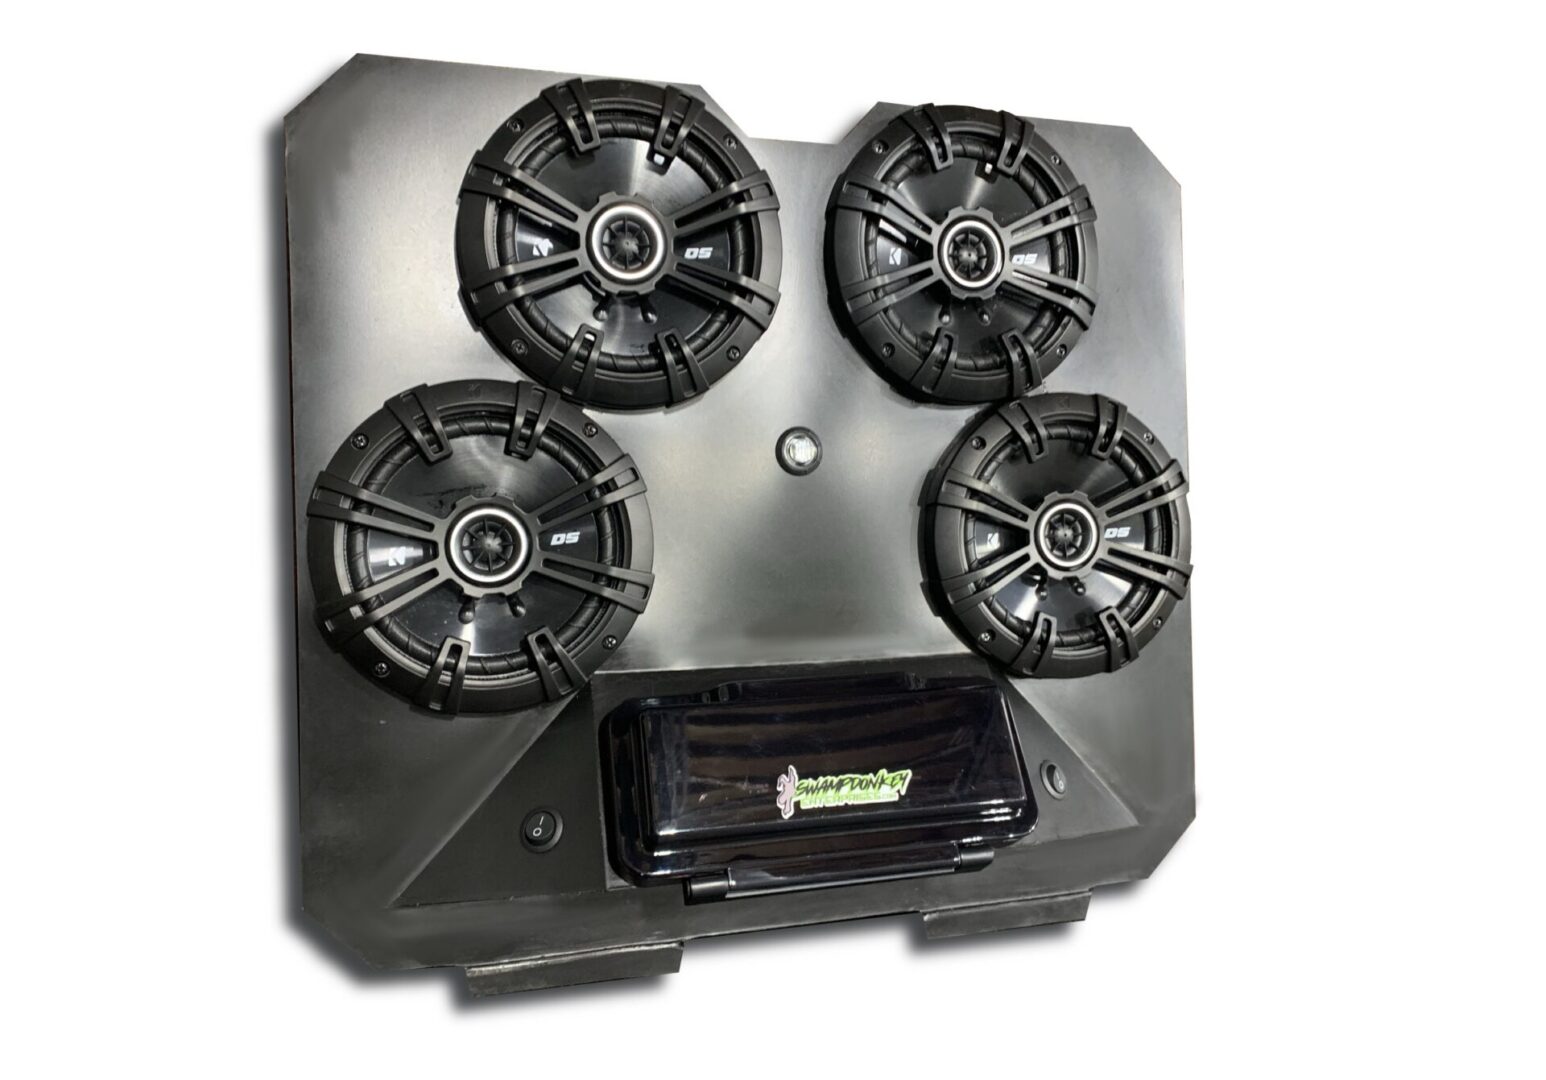 Image of CAN AM defender LED stereo BT soundbar system